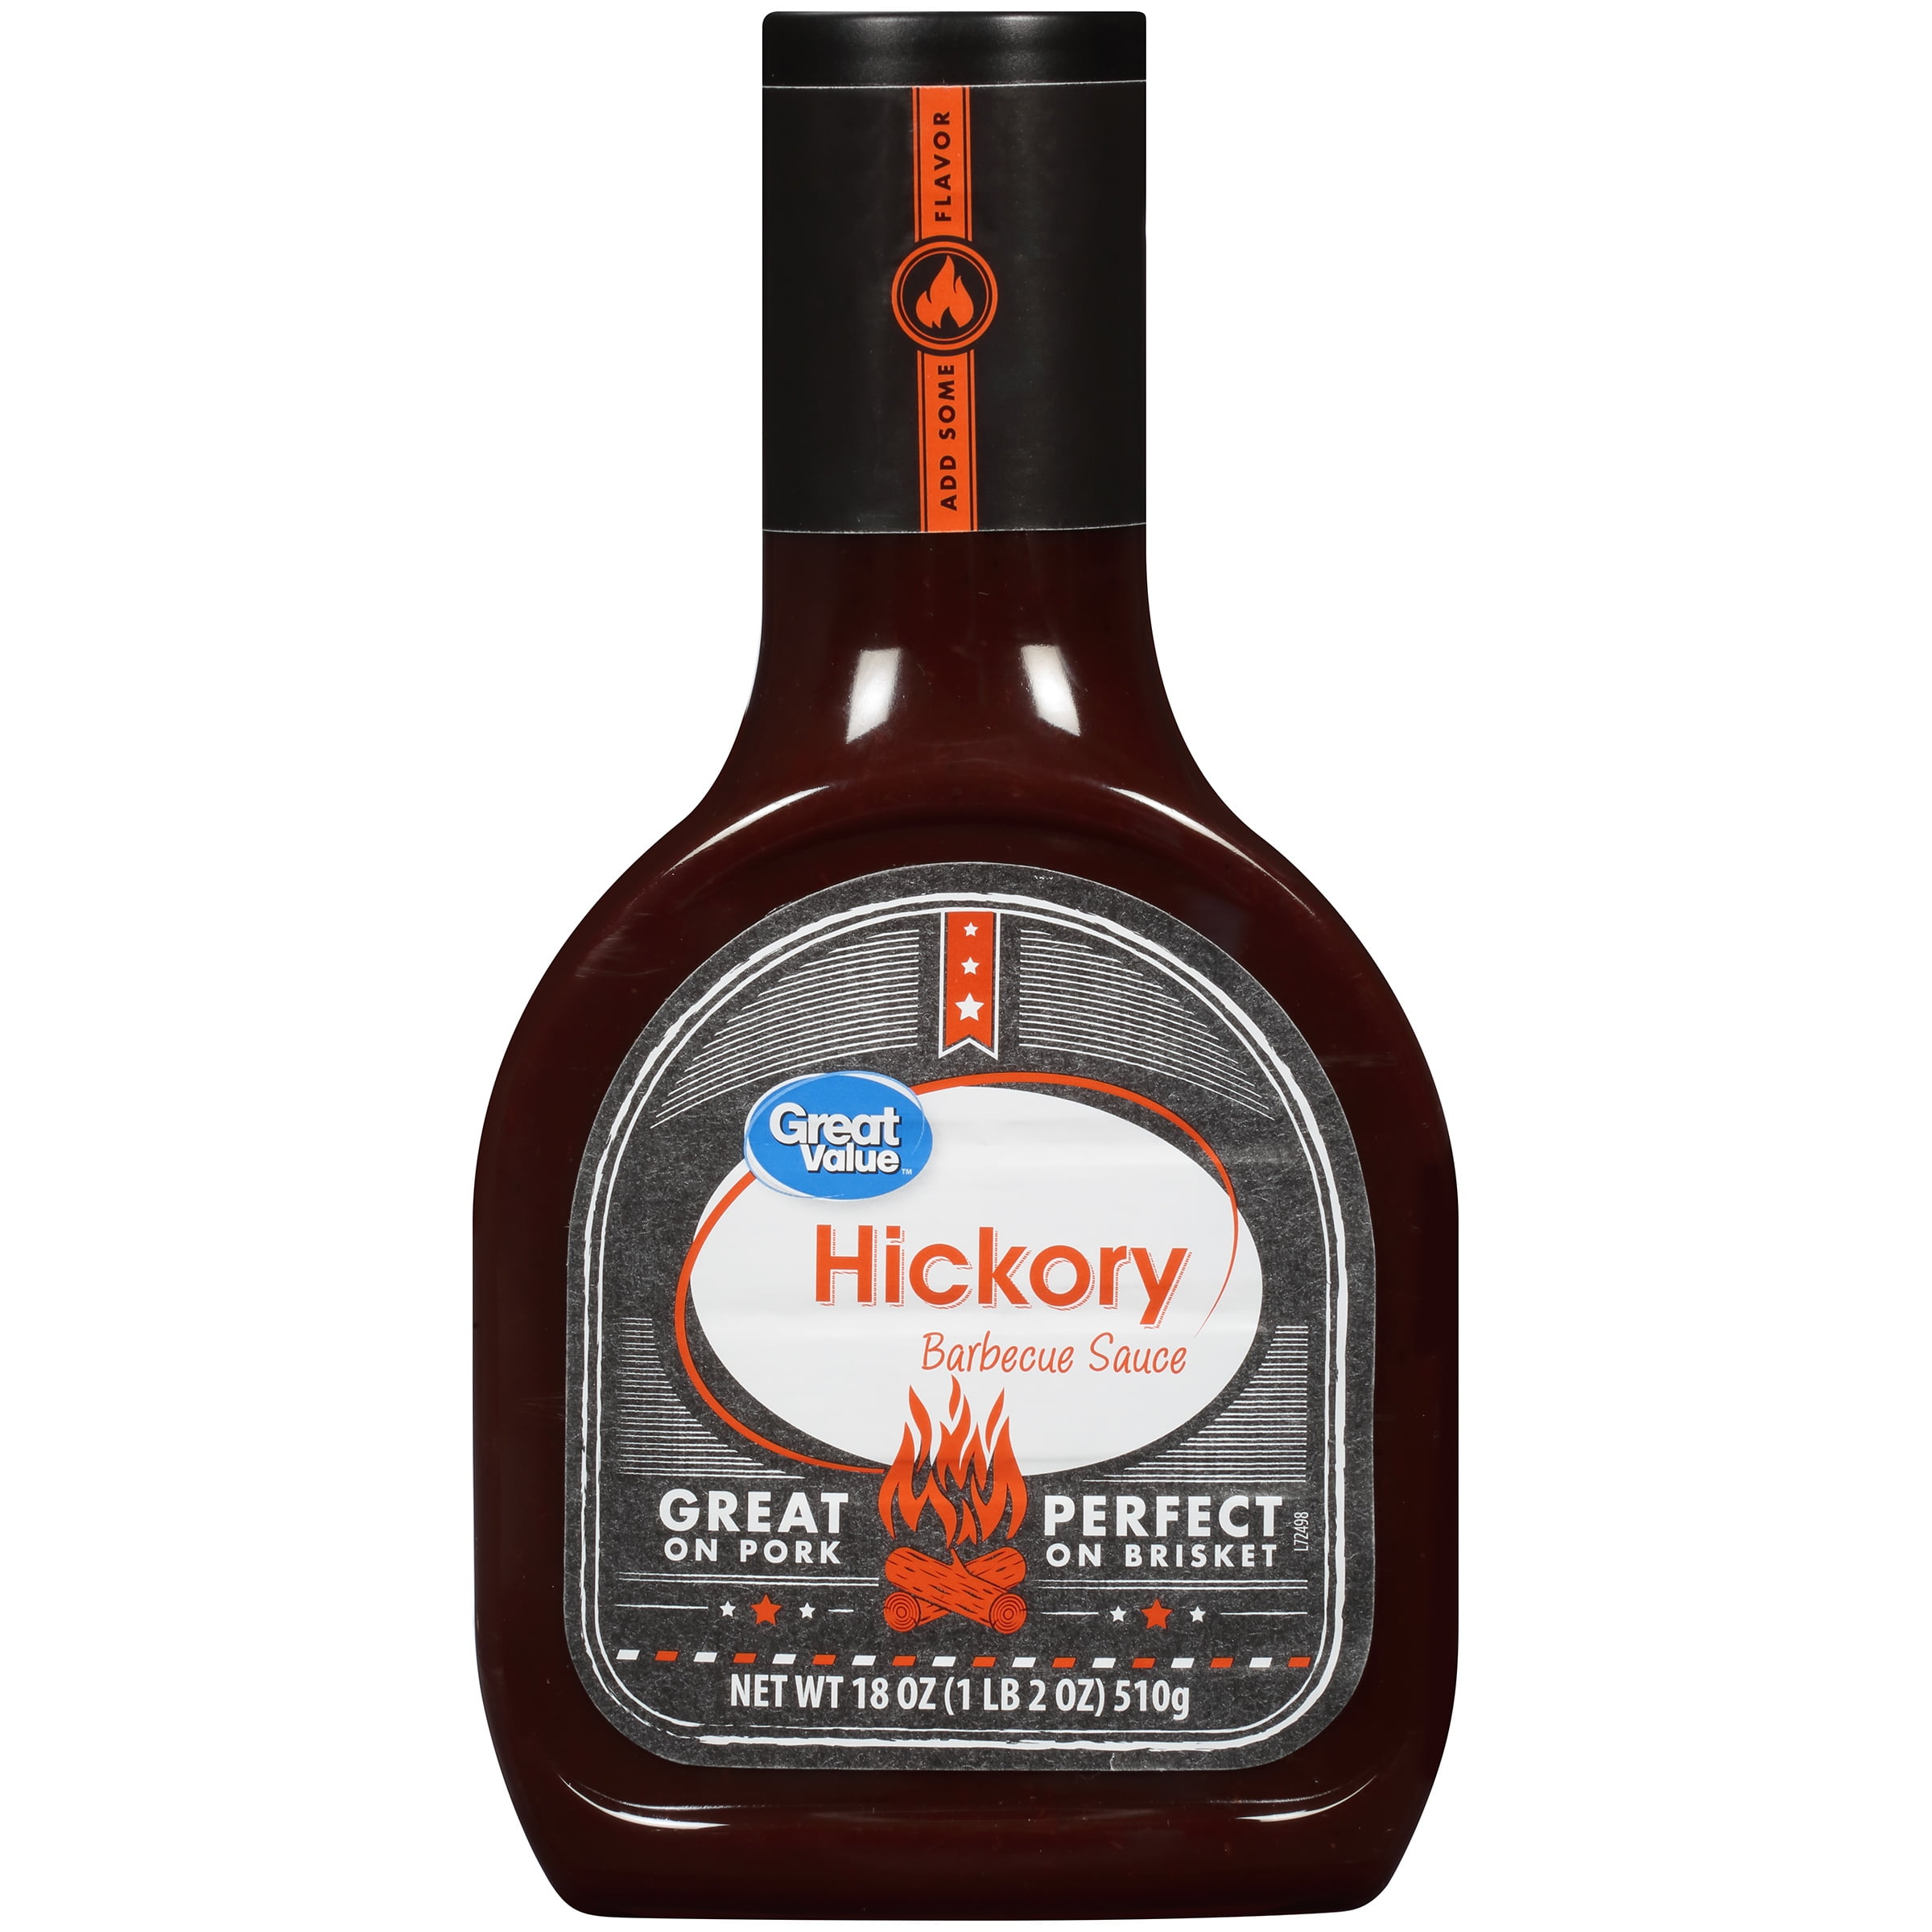 Great value Hickory Barbecue Sauce, 18 oz - Walmart.com - Walmart.com